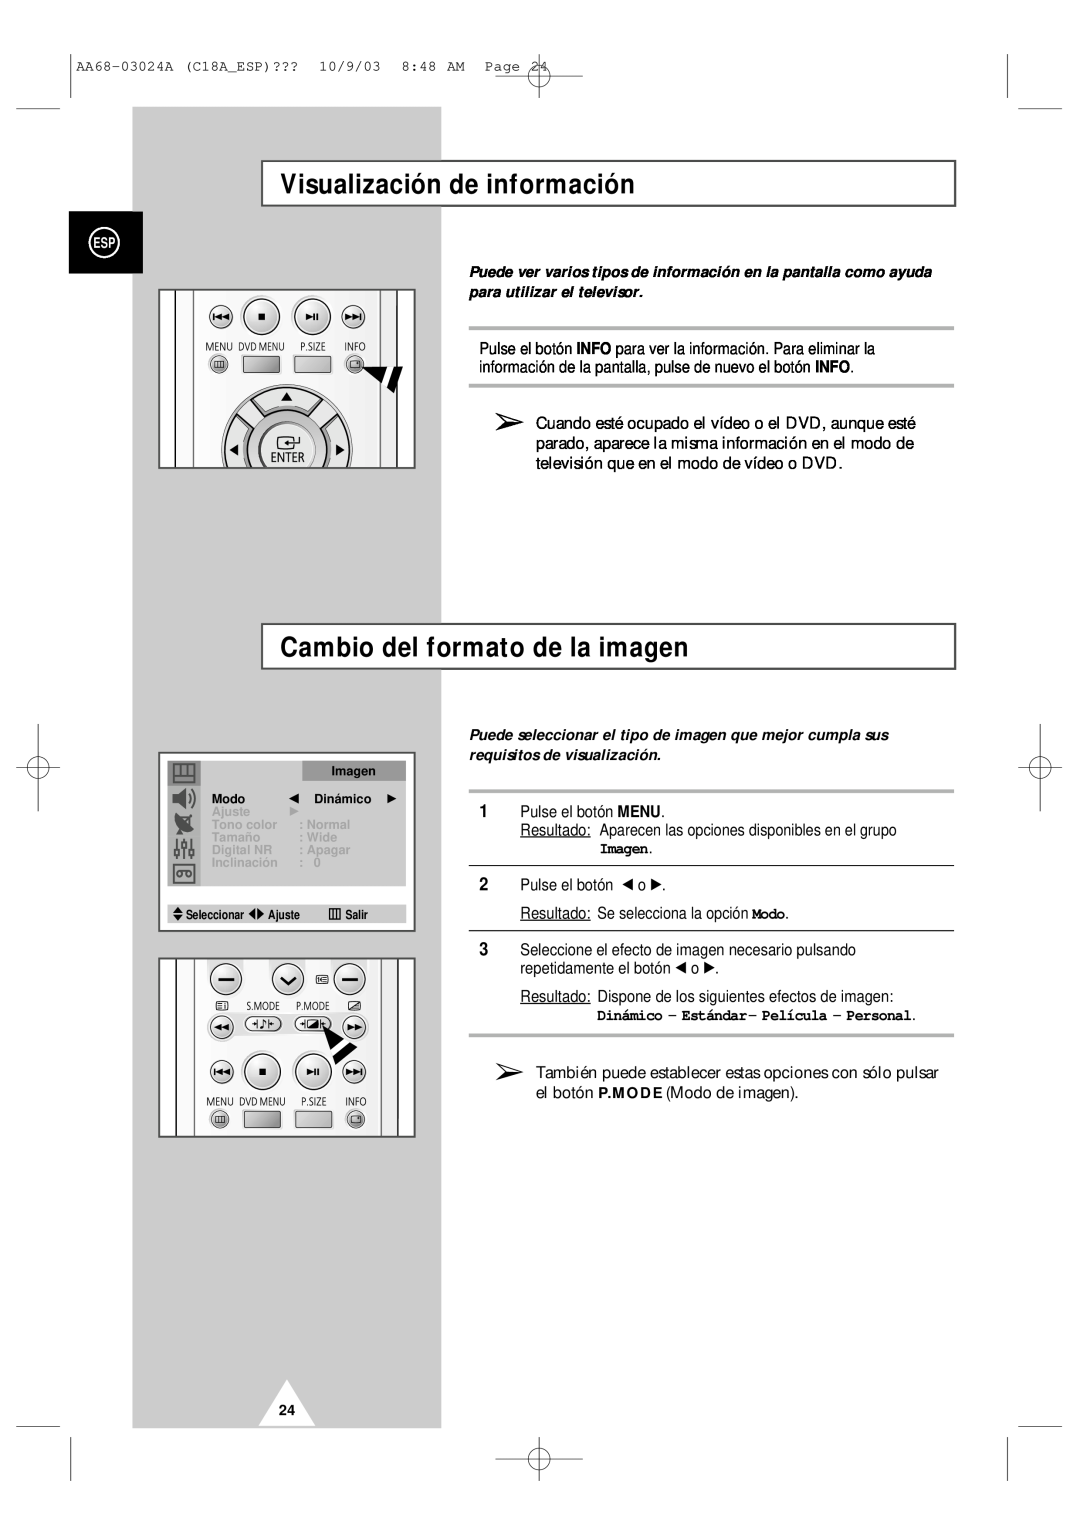 Samsung UW17J11VD5XXEC, UW17J11VD5XXEF manual Visualización de información, Cambio del formato de la imagen, Imagen 